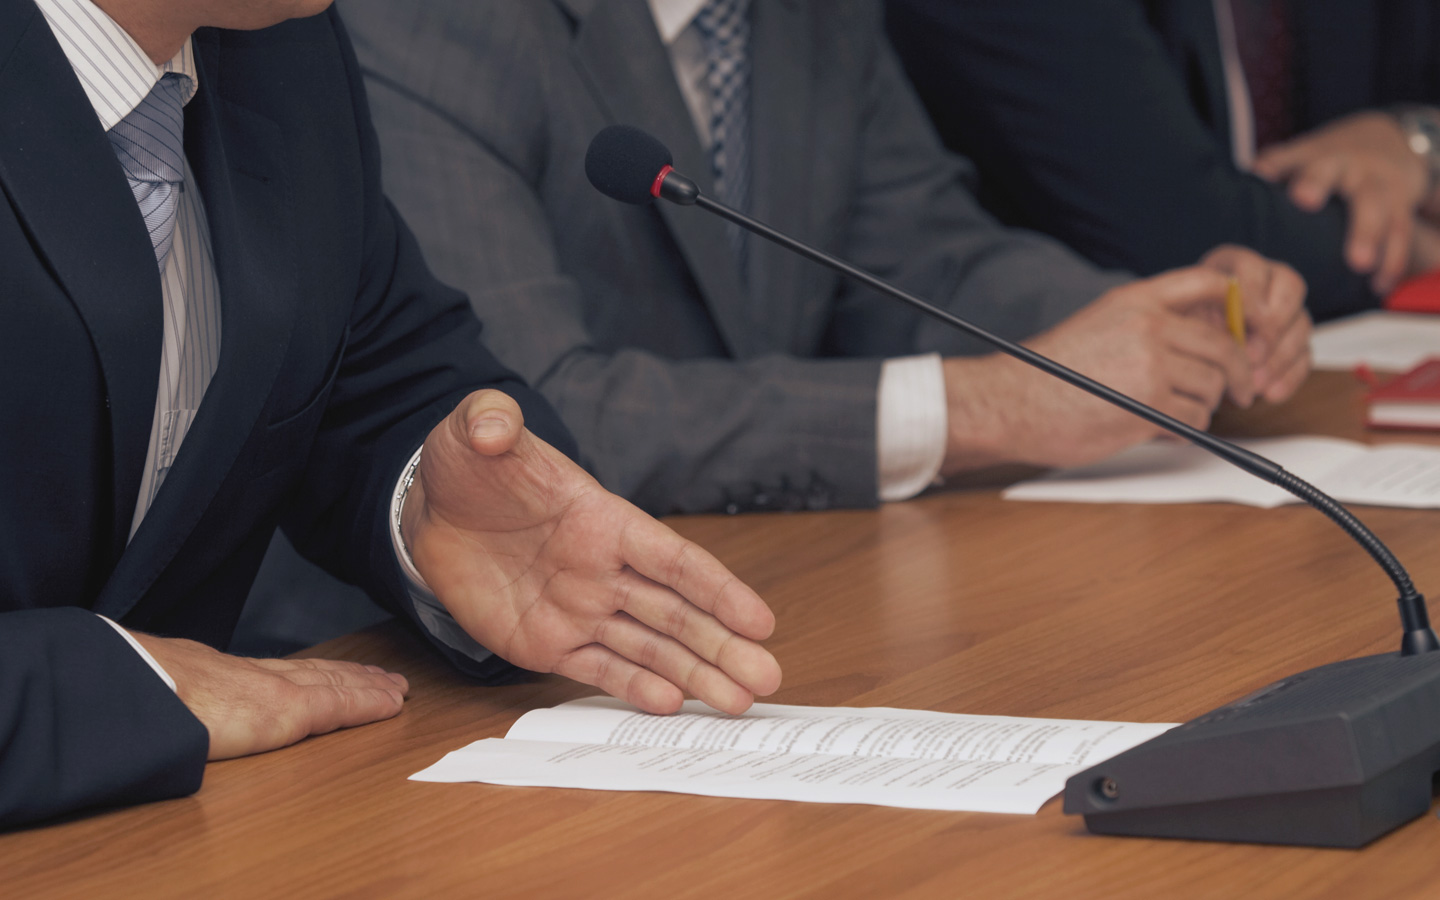 Foto: Nachaufnahme von Händen am Tisch mit Mikrofonen und Unterlagen. Eine Person im Anzug hält eine Rede und hat einen Zettel vor sich liegen mit Notizen.